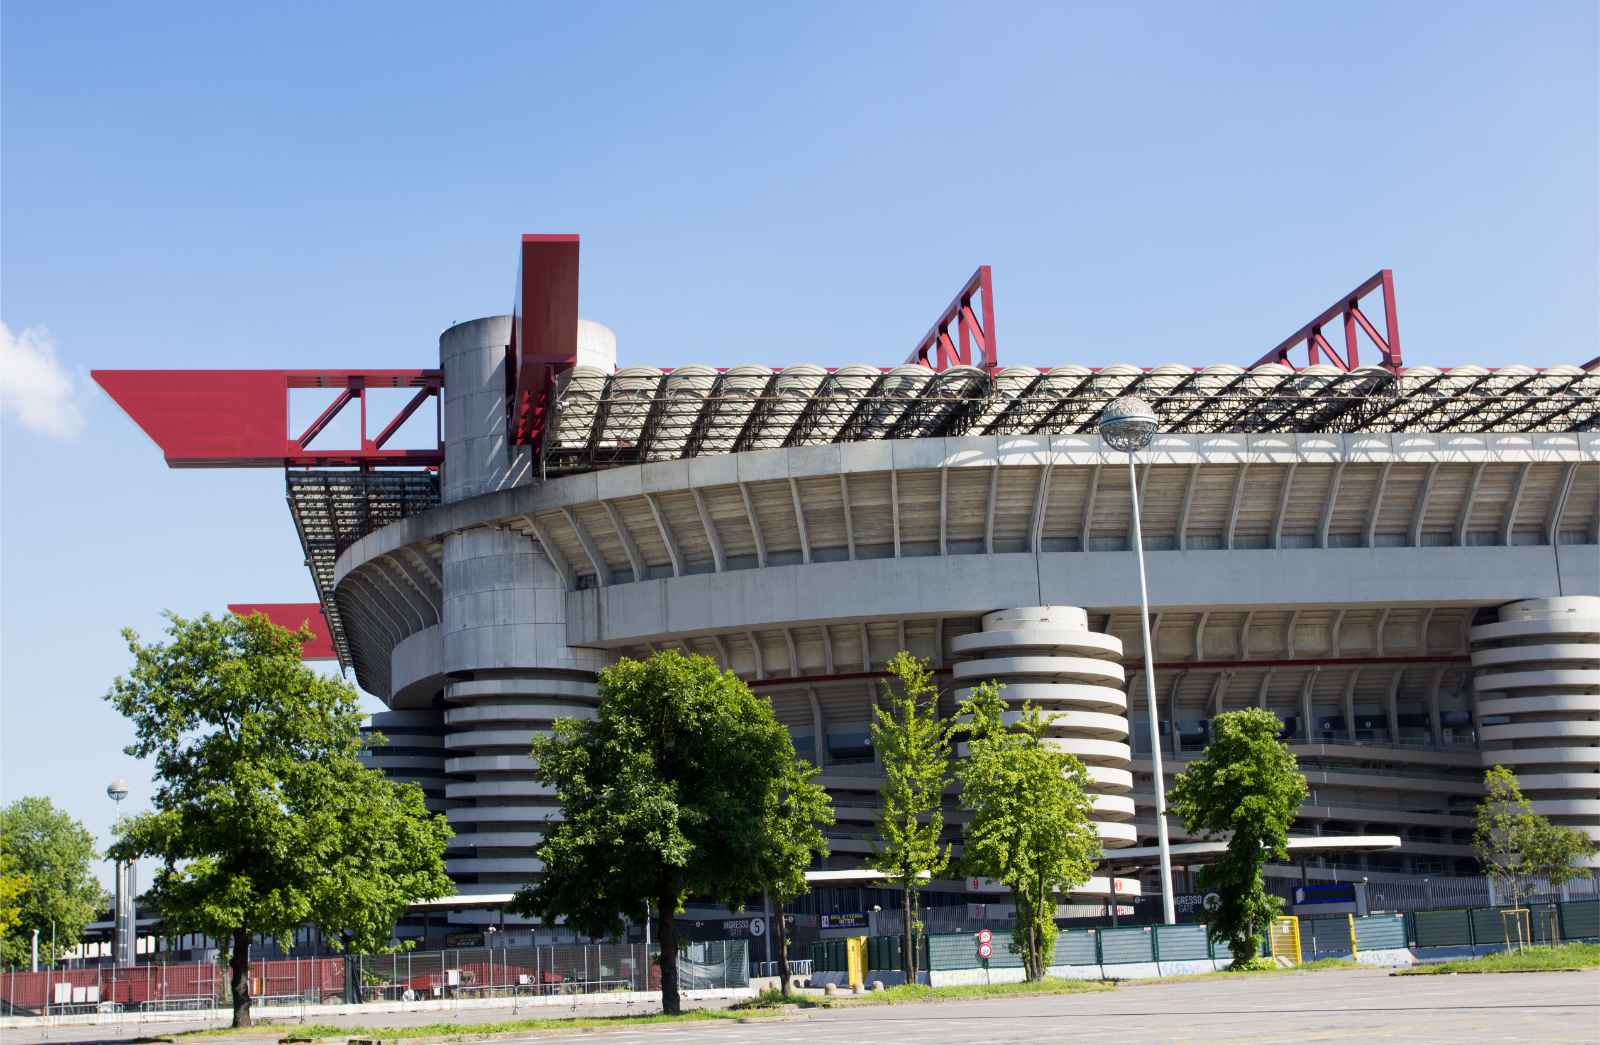 Things to do in Milan San Siro Stadium